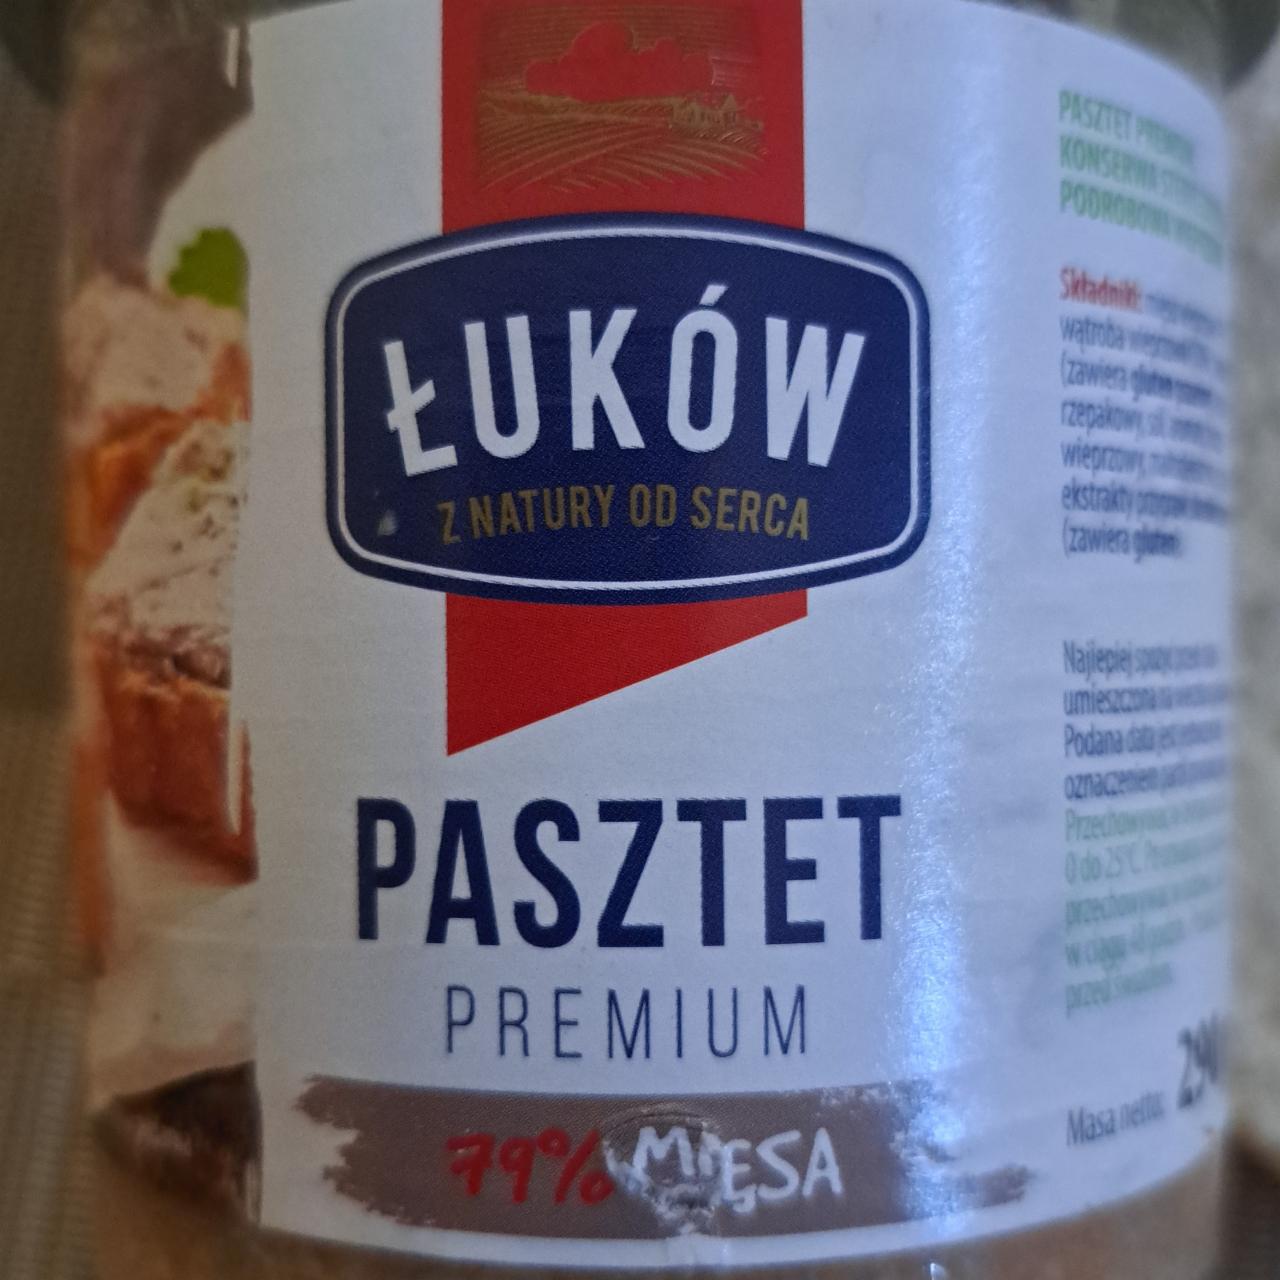 Fotografie - Pasztet premium 79% miesa Łuków